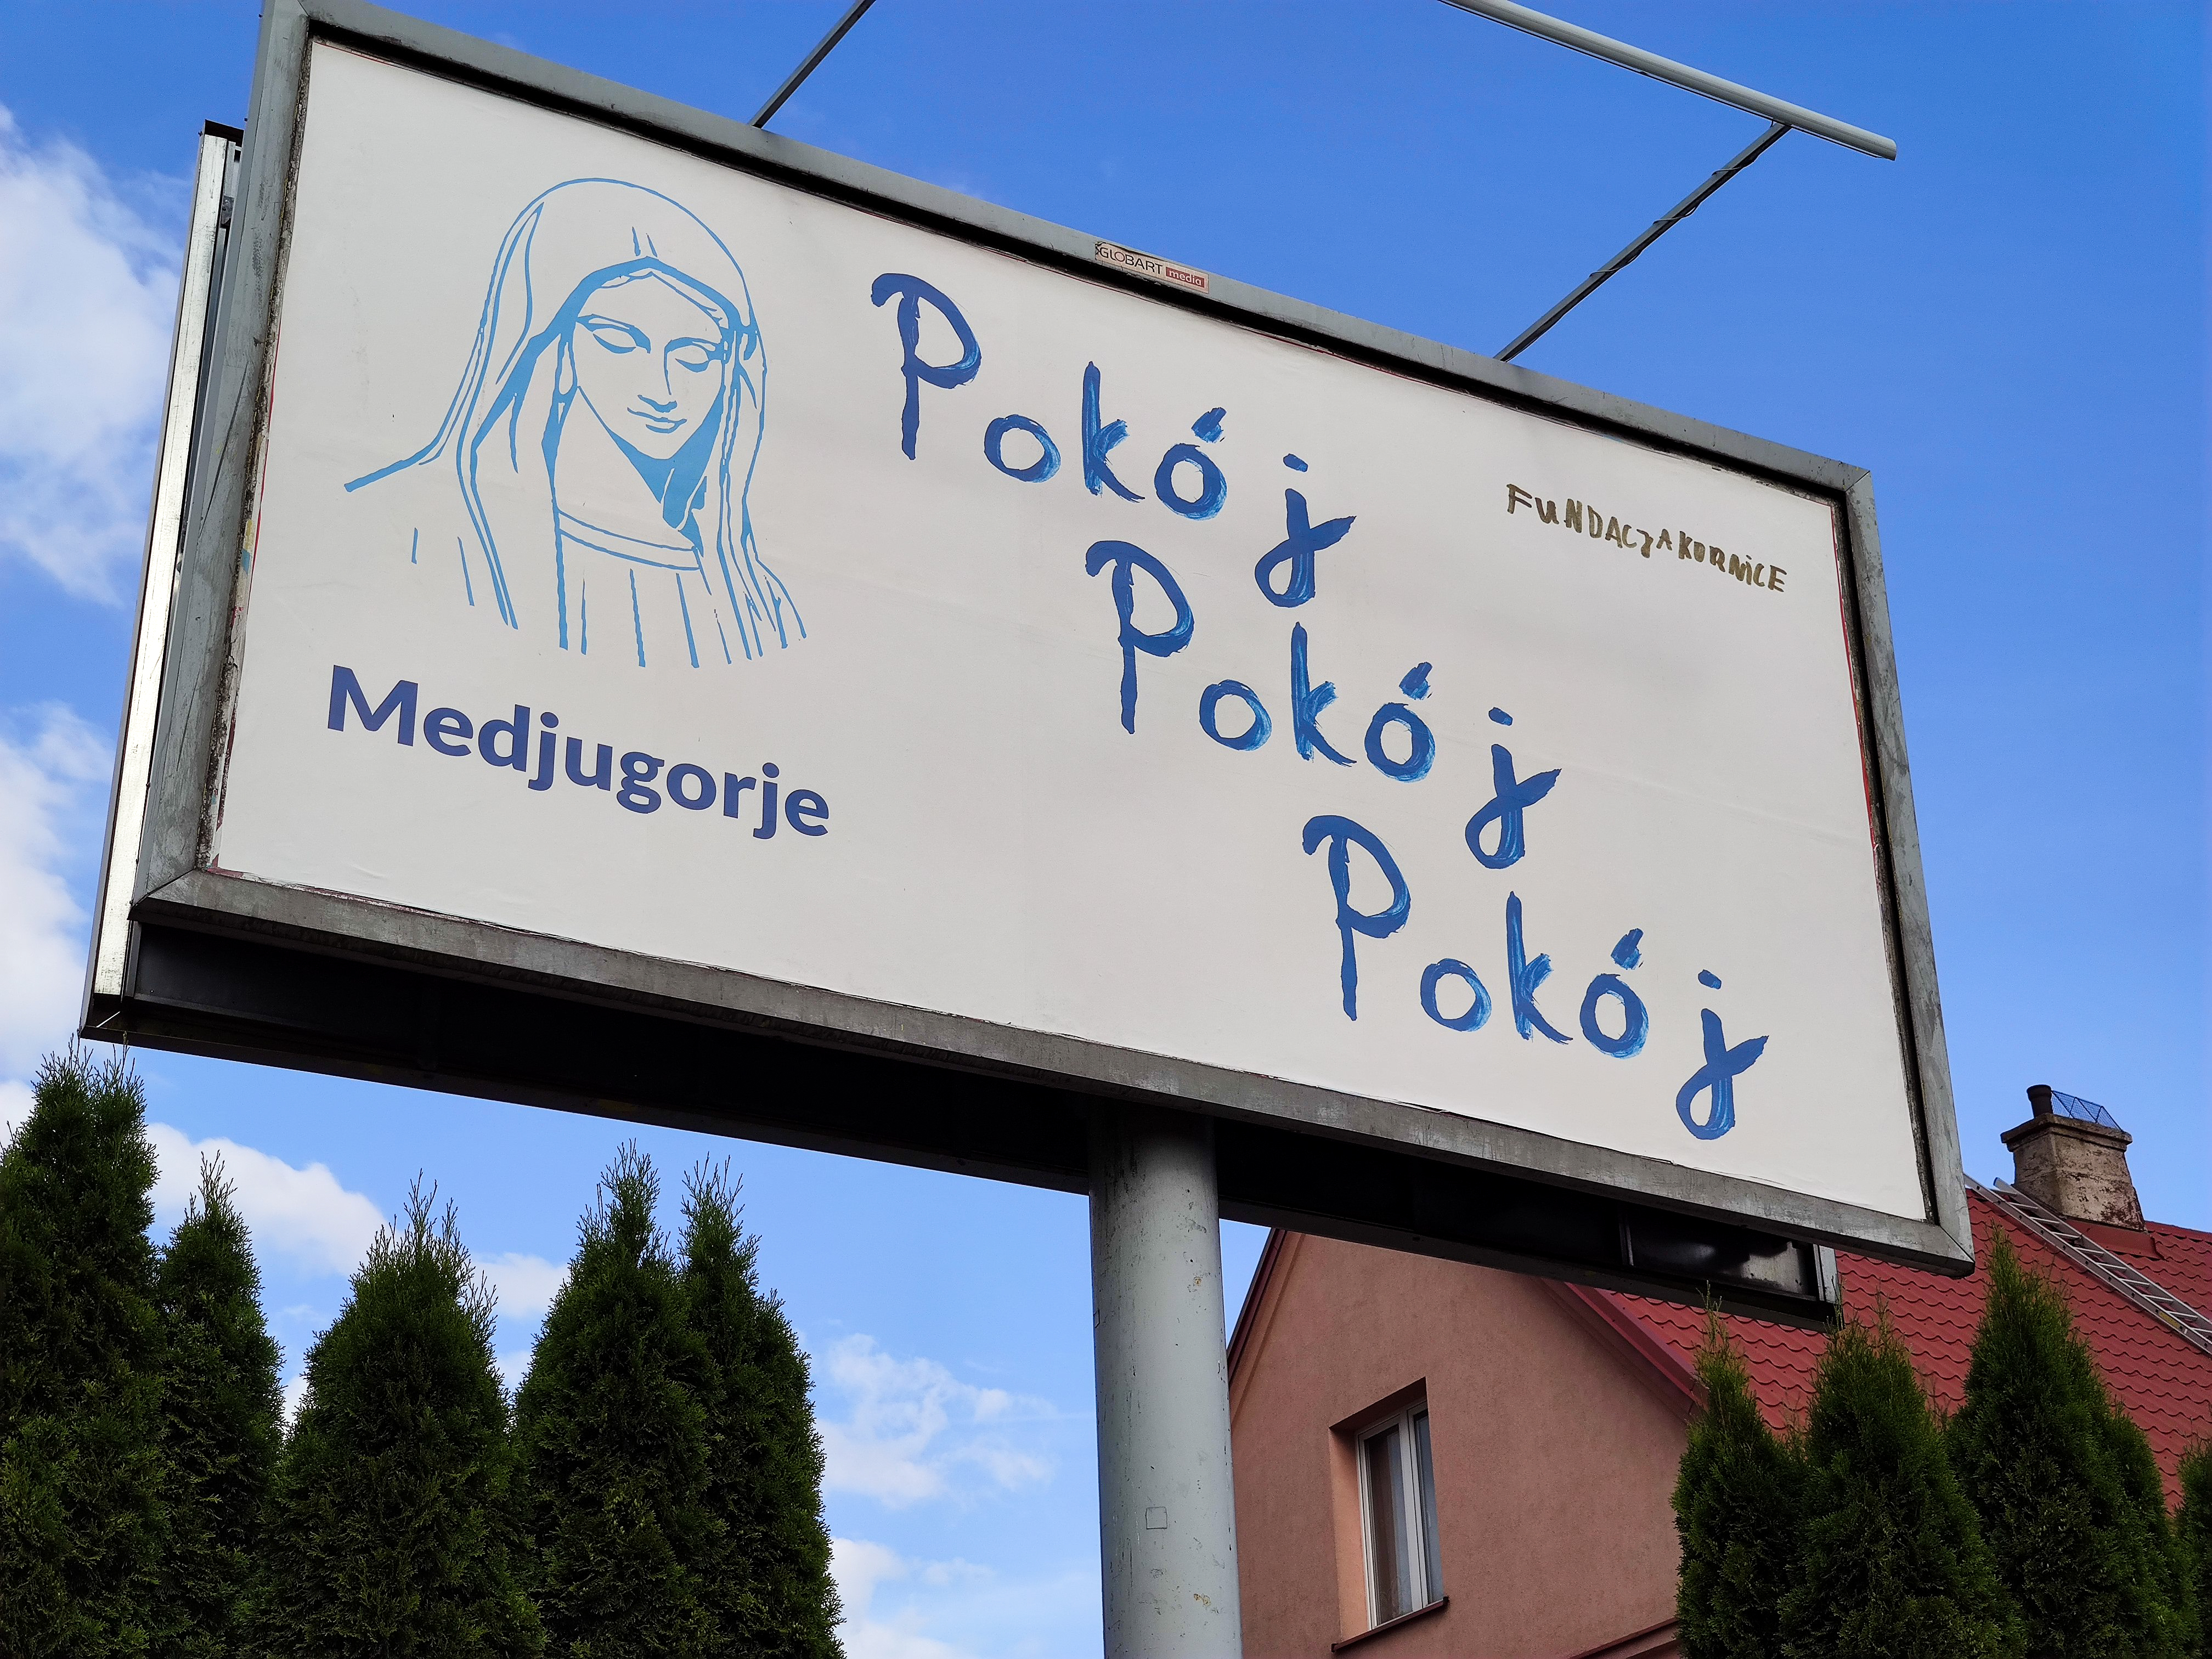 Białystok, 06.07.2022. Polskę zalała kolejna kampania billboardowa, tym razem jednak na plakatach znalazł się wizerunek Matki Boskiej